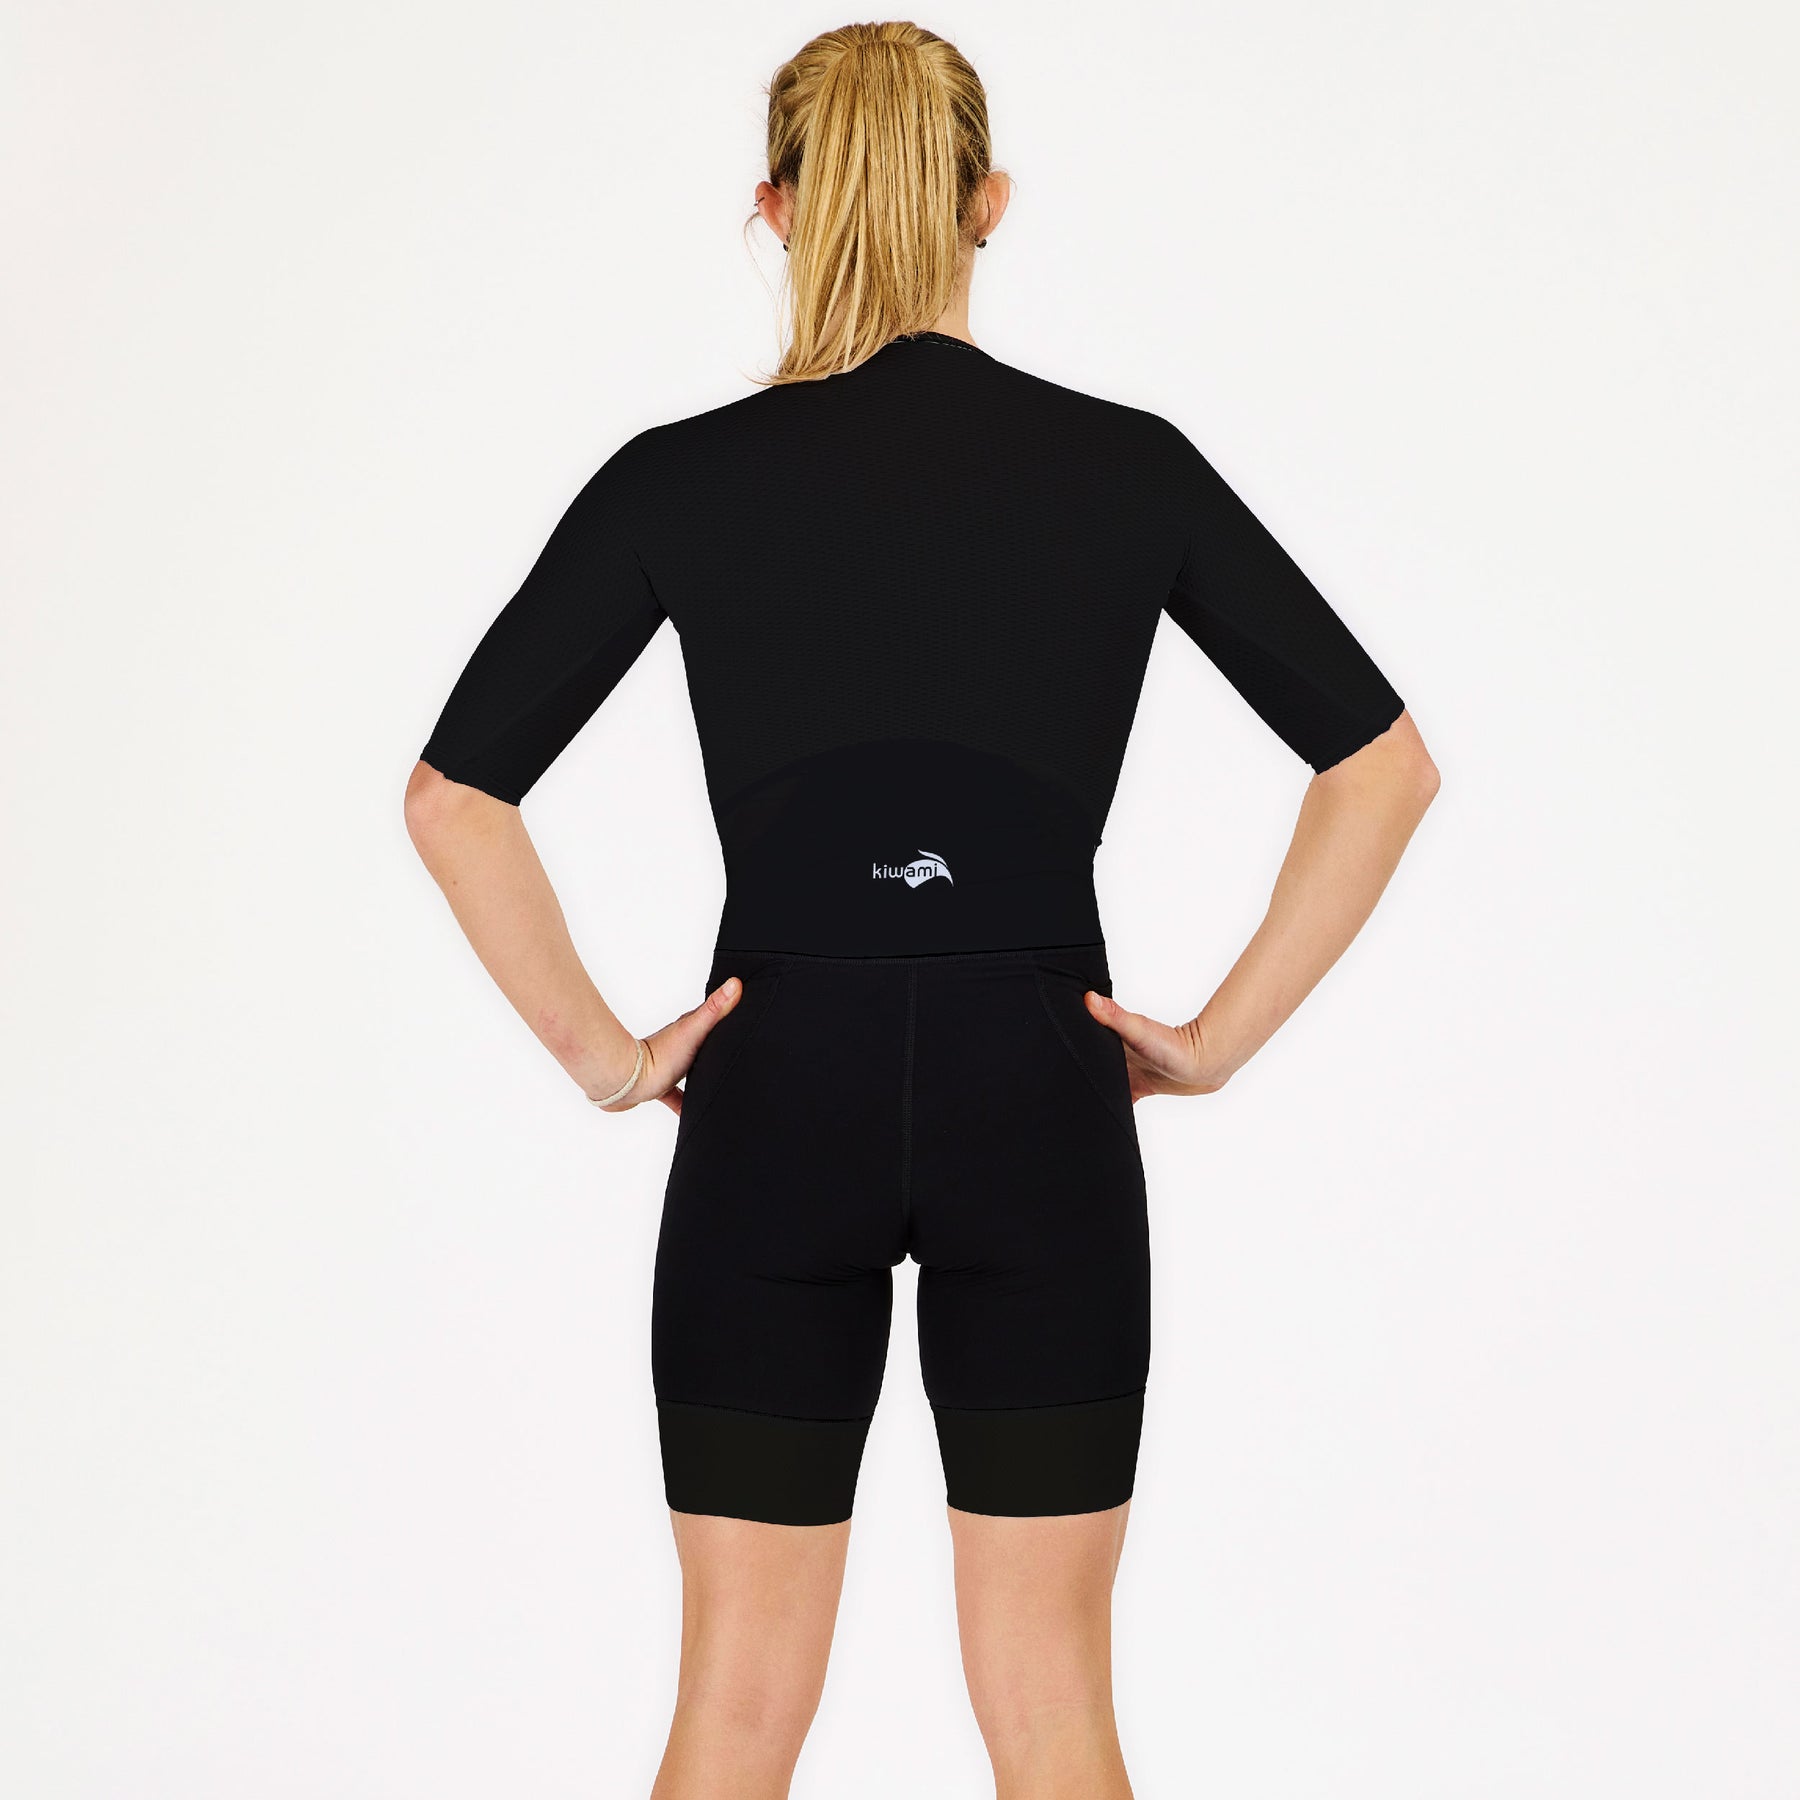 combinaison de triathlon,  type trifonction femme longue distance avec manches - tenue aérodynamique kiwami sports fabrication française